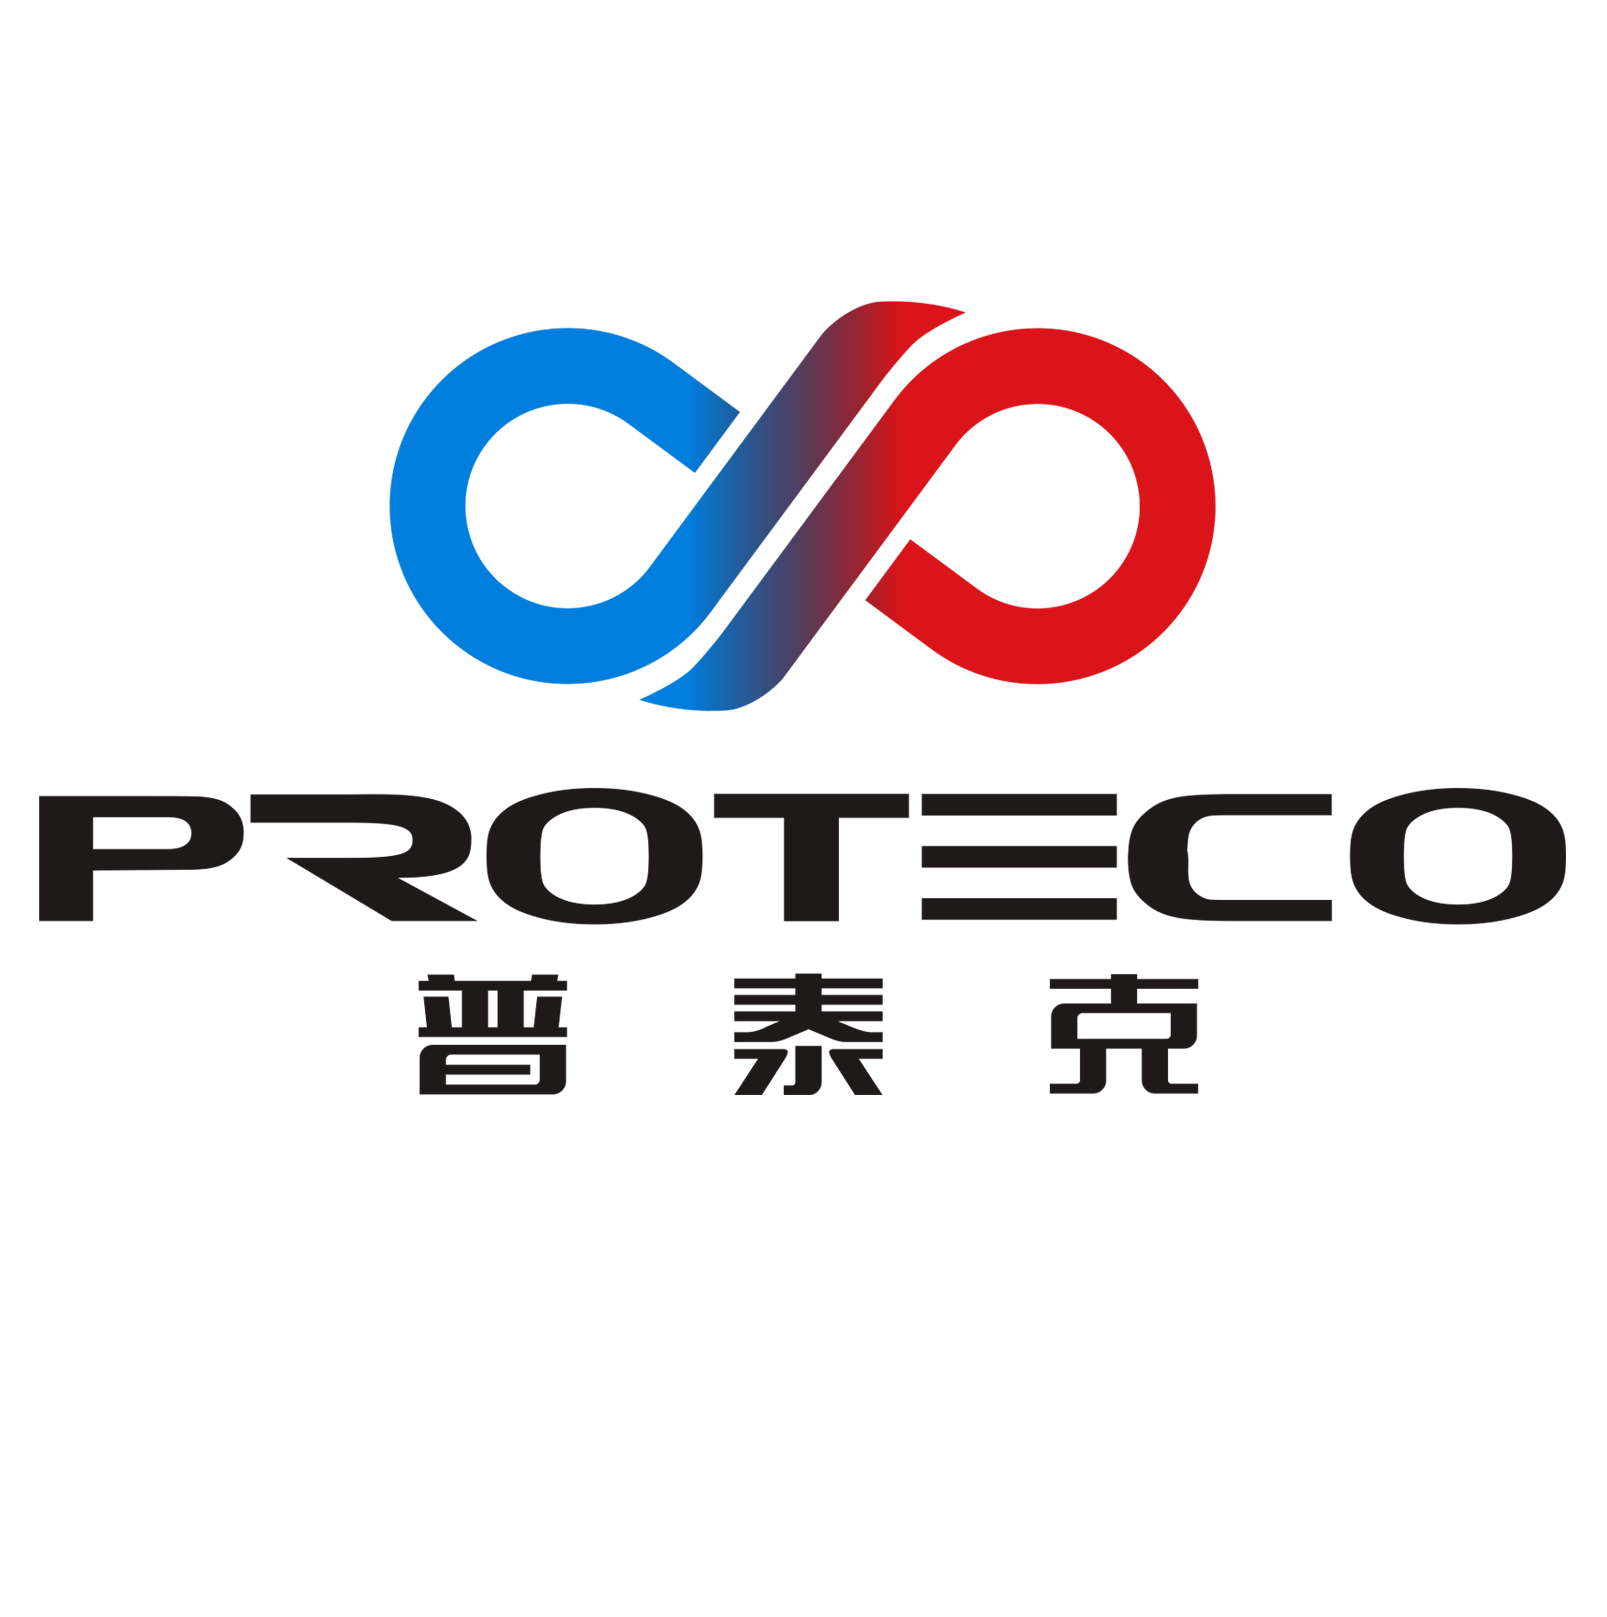 普泰克（上海）制冷设备技术有限公司